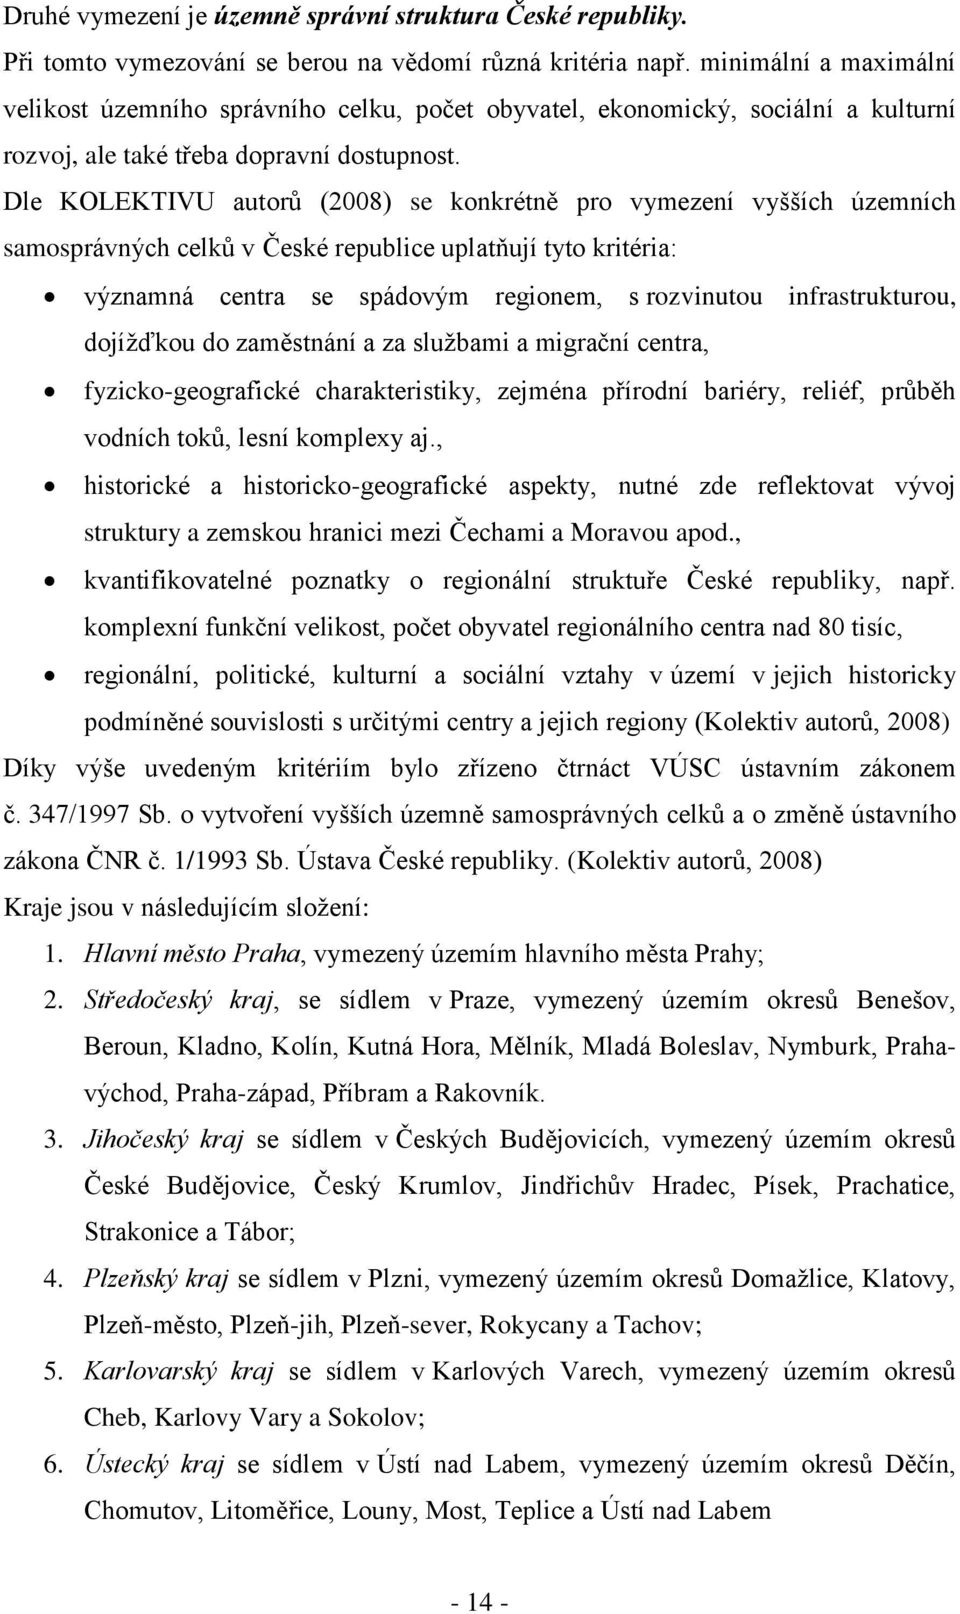 Dle KOLEKTIVU autorů (2008) se konkrétně pro vymezení vyšších územních samosprávných celků v České republice uplatňují tyto kritéria: významná centra se spádovým regionem, s rozvinutou